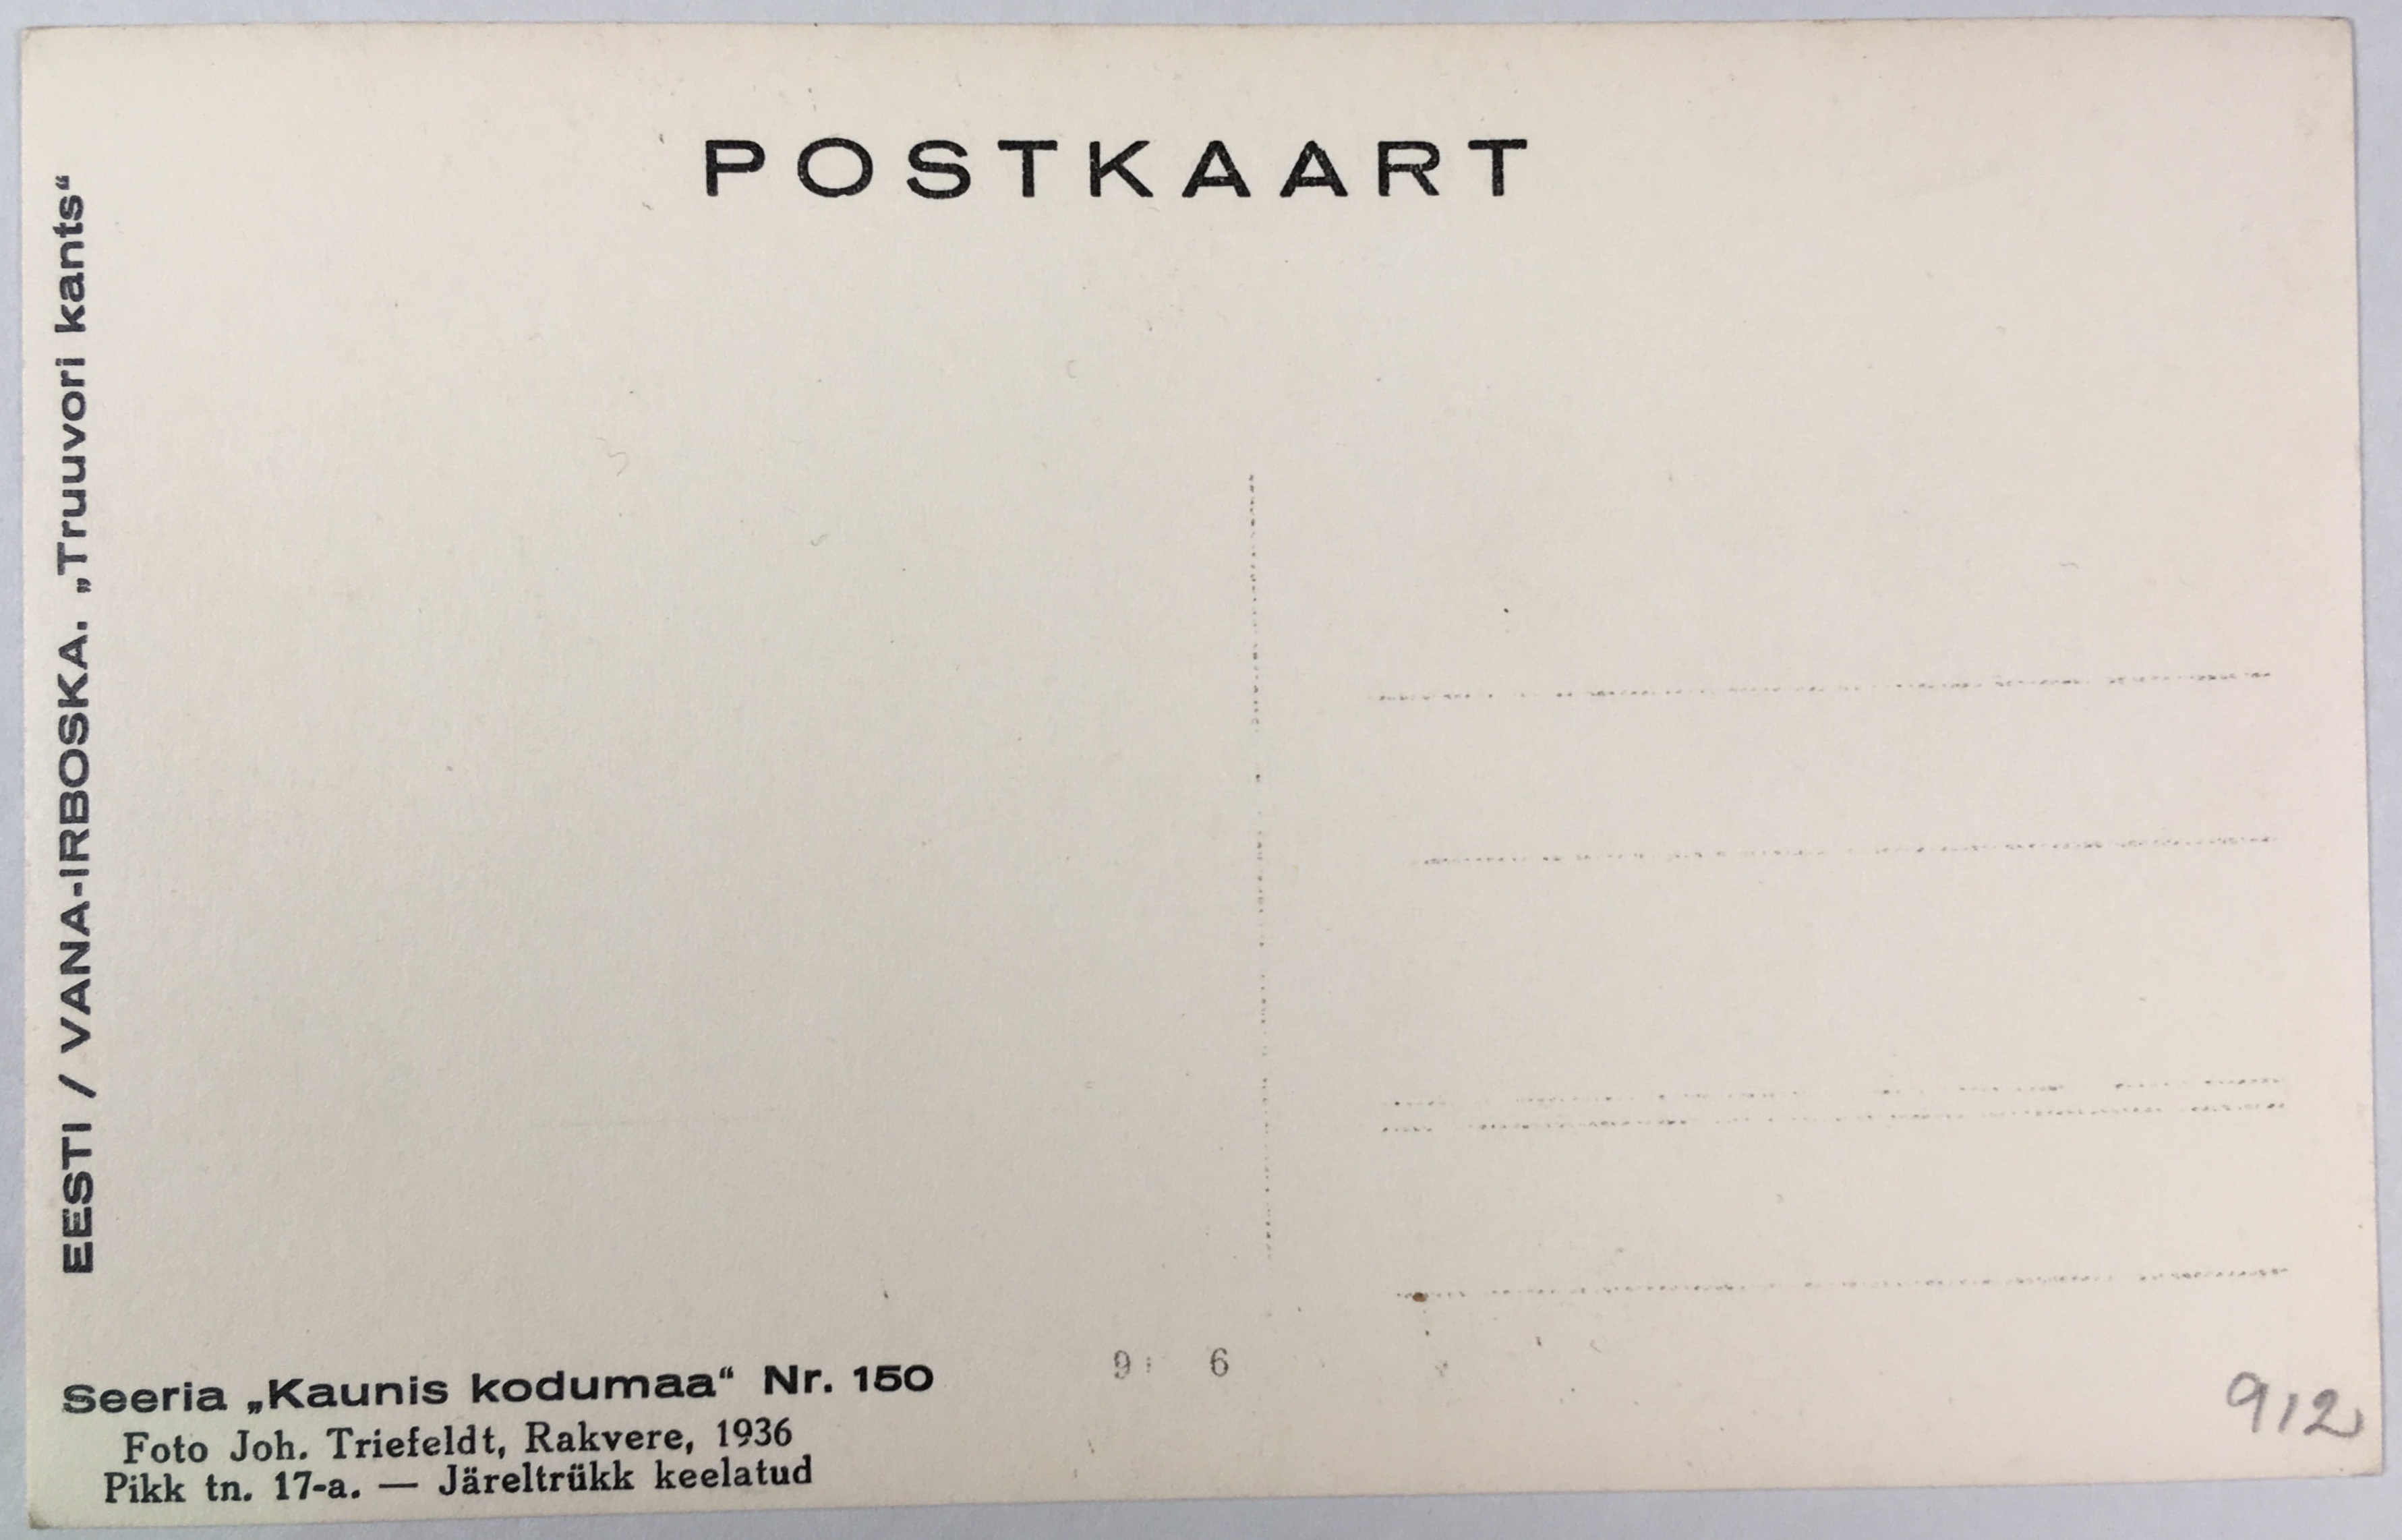 Fotopostkaart sarjast "Kaunis kodumaa" Nr. 150 (tagakülg) - Foto: Carl Sarap (1893-1942)